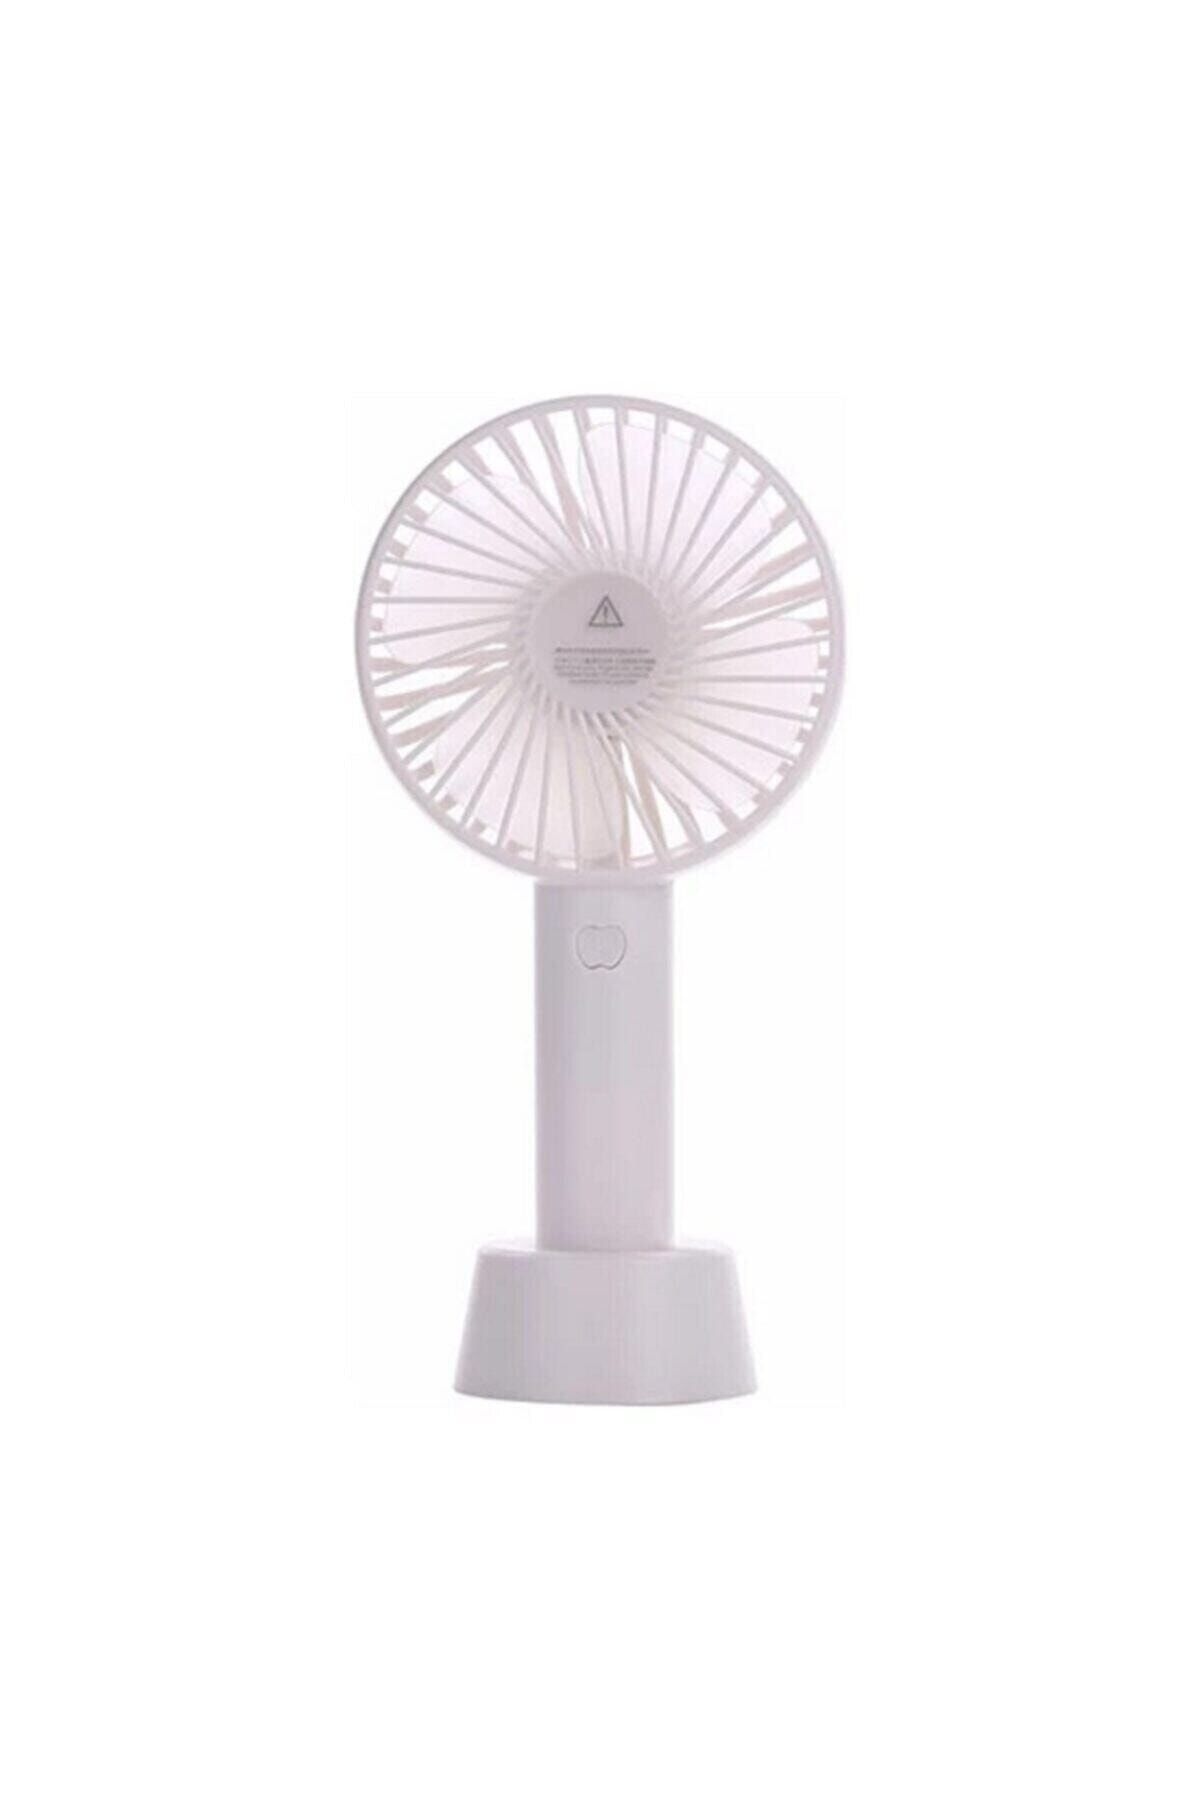 Adista Şarjlı Fan Mini Taşınabilir El Ve Masa Üstü 3 Kademeli Standlı Vantilatör Fan